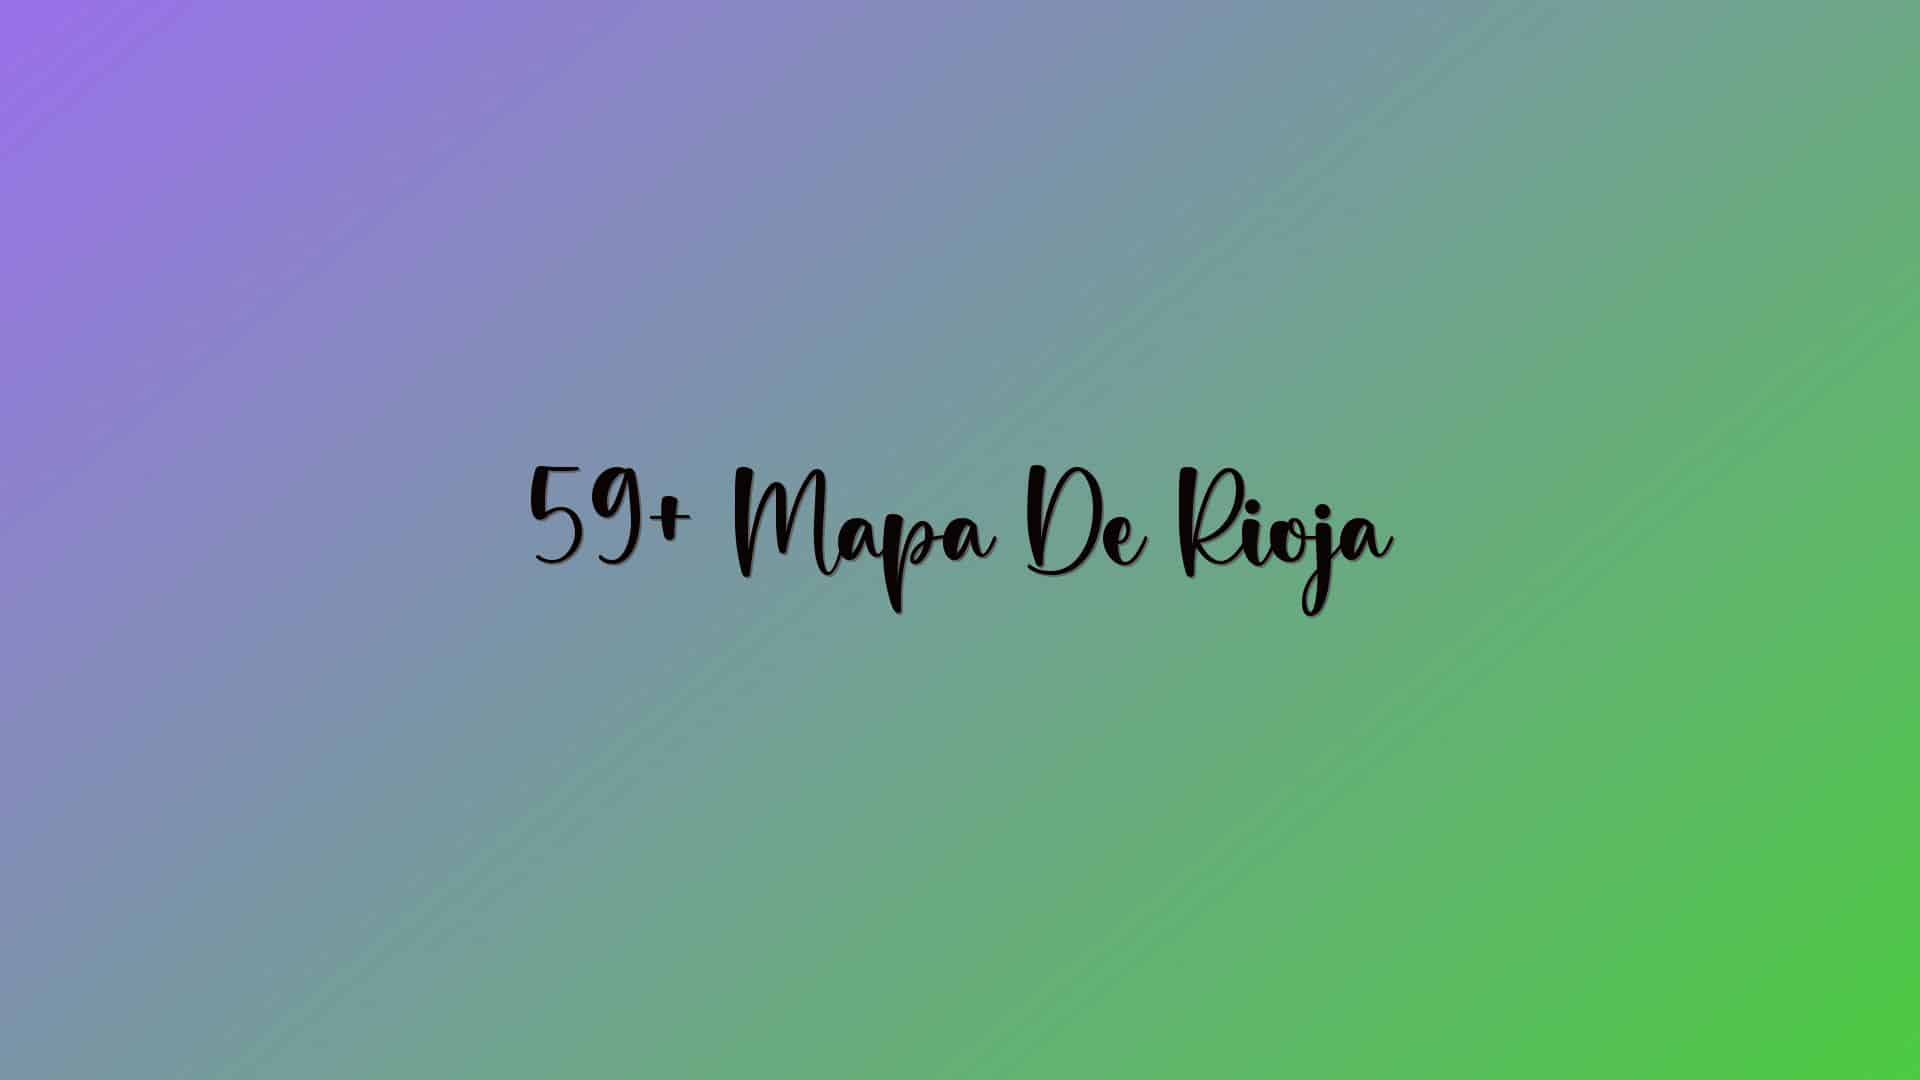 59+ Mapa De Rioja